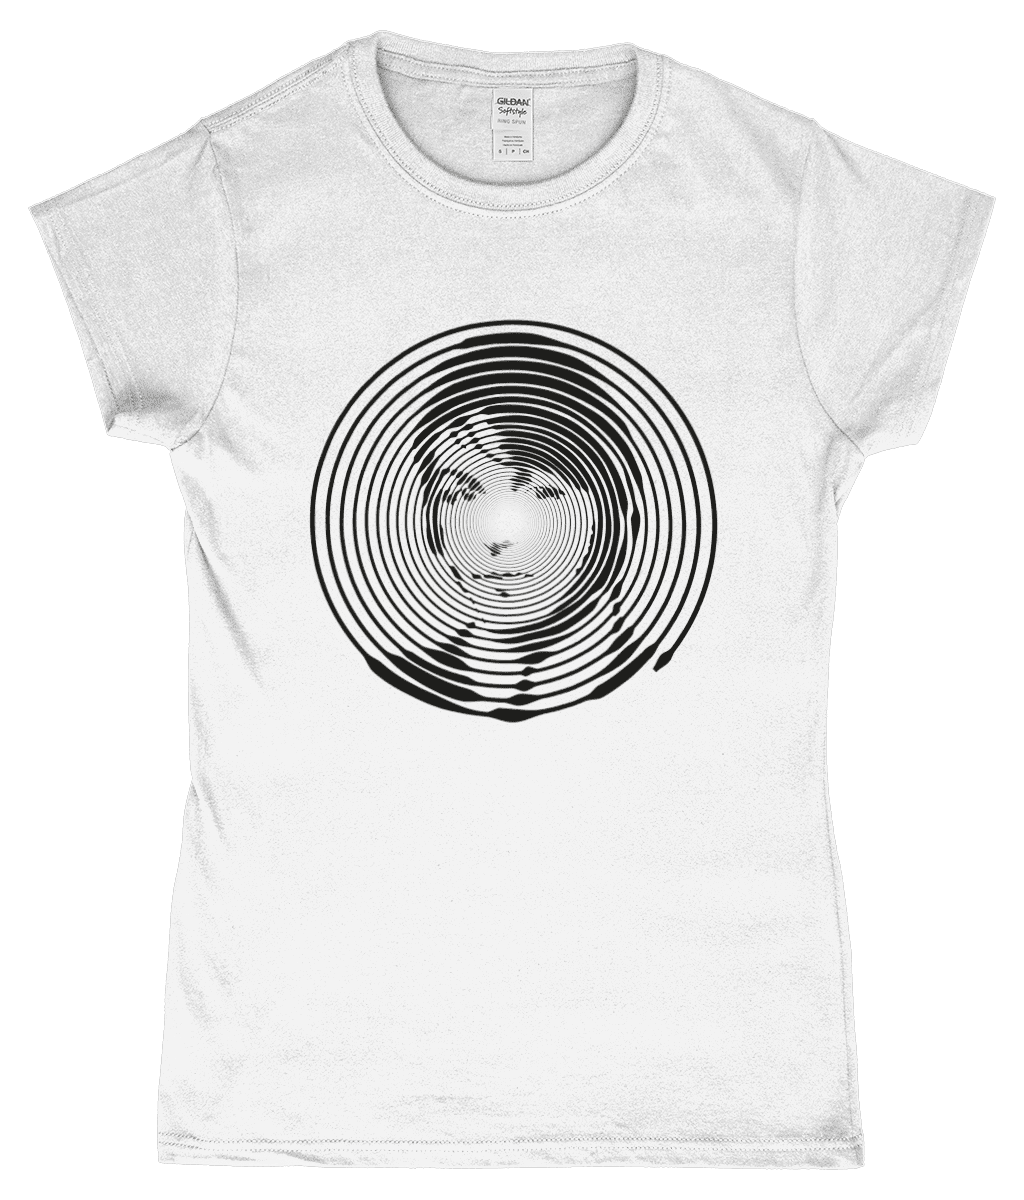 Paul McCartney Vinyl Record T-Shirt Design White